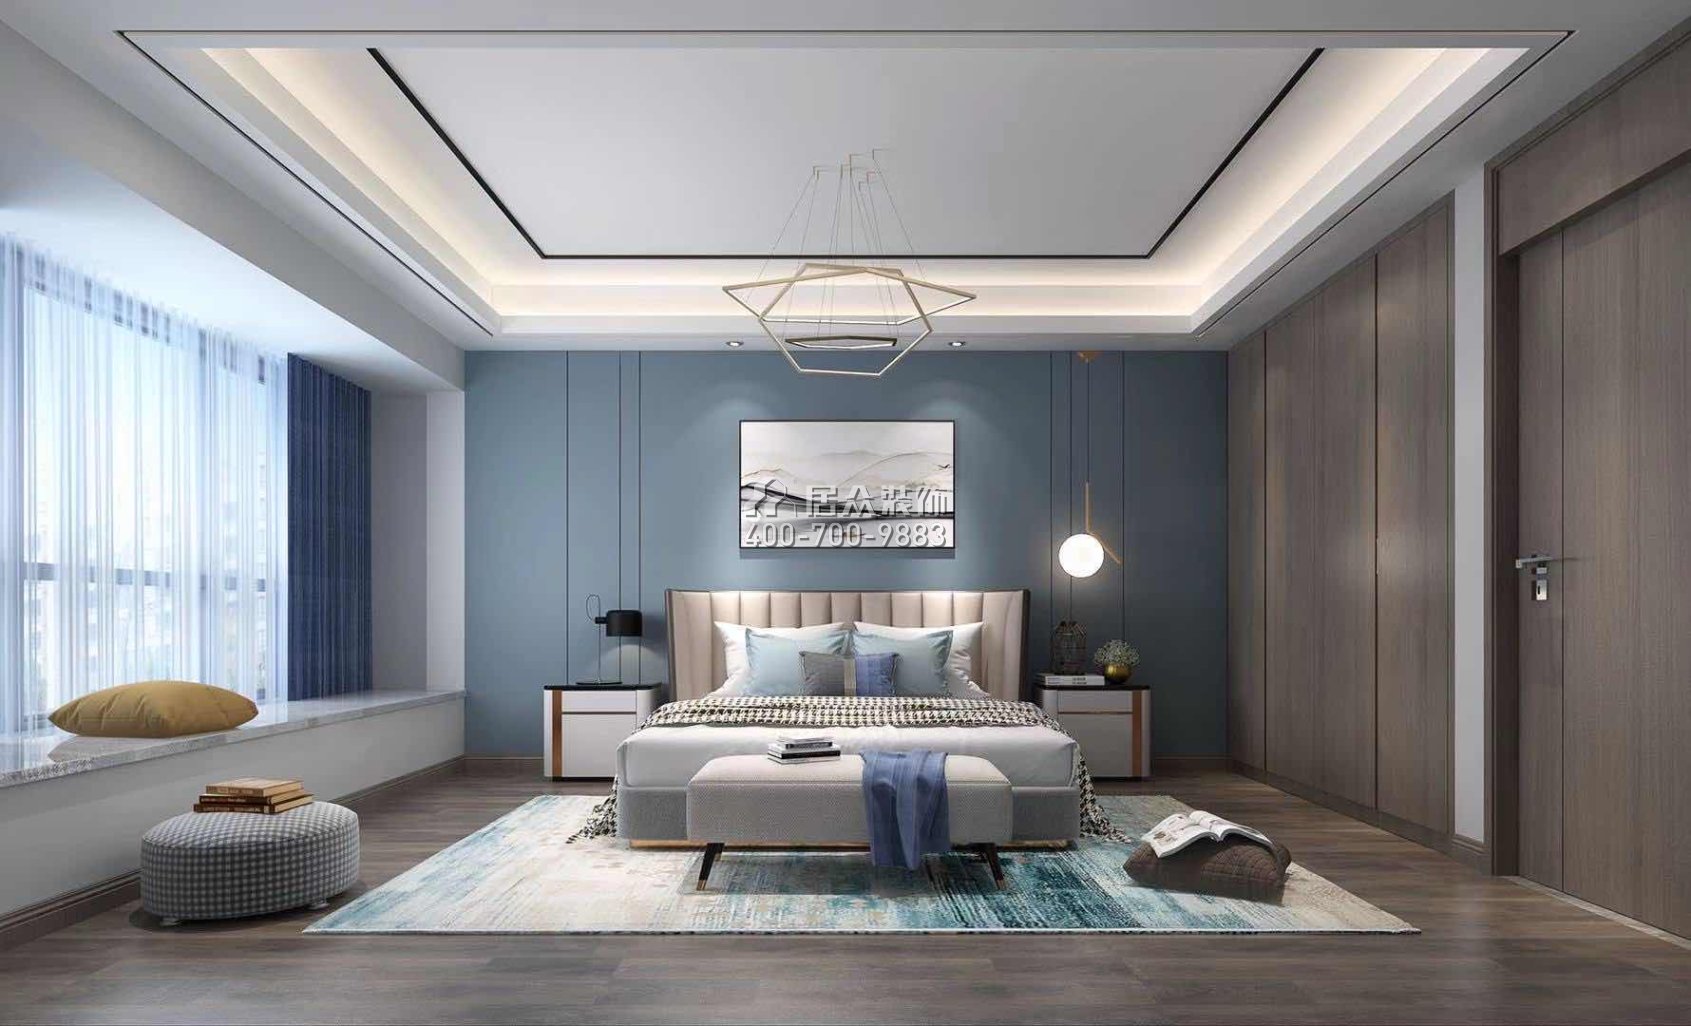 经世龙城140平方米现代简约风格平层户型卧室装修效果图